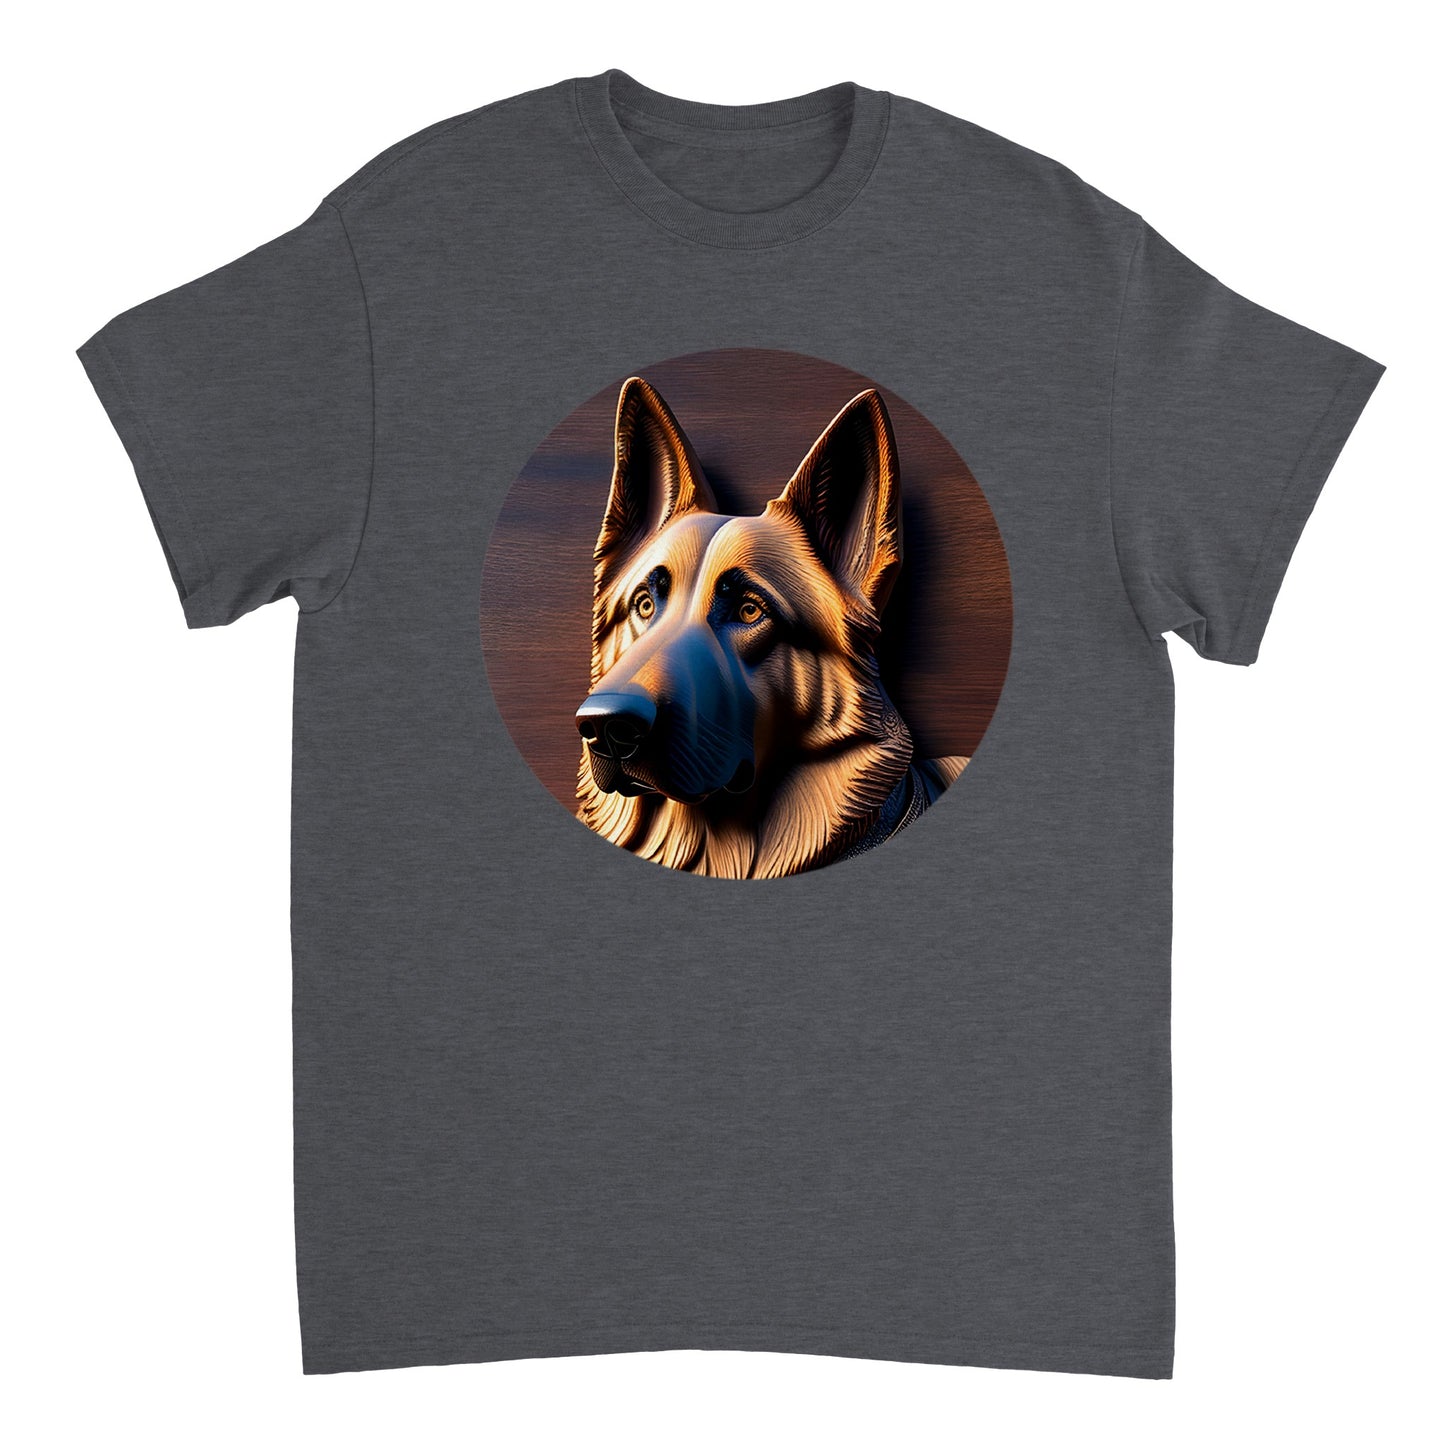 3D Wooden Animal Art - Heavyweight Unisex Crewneck T-shirt 21